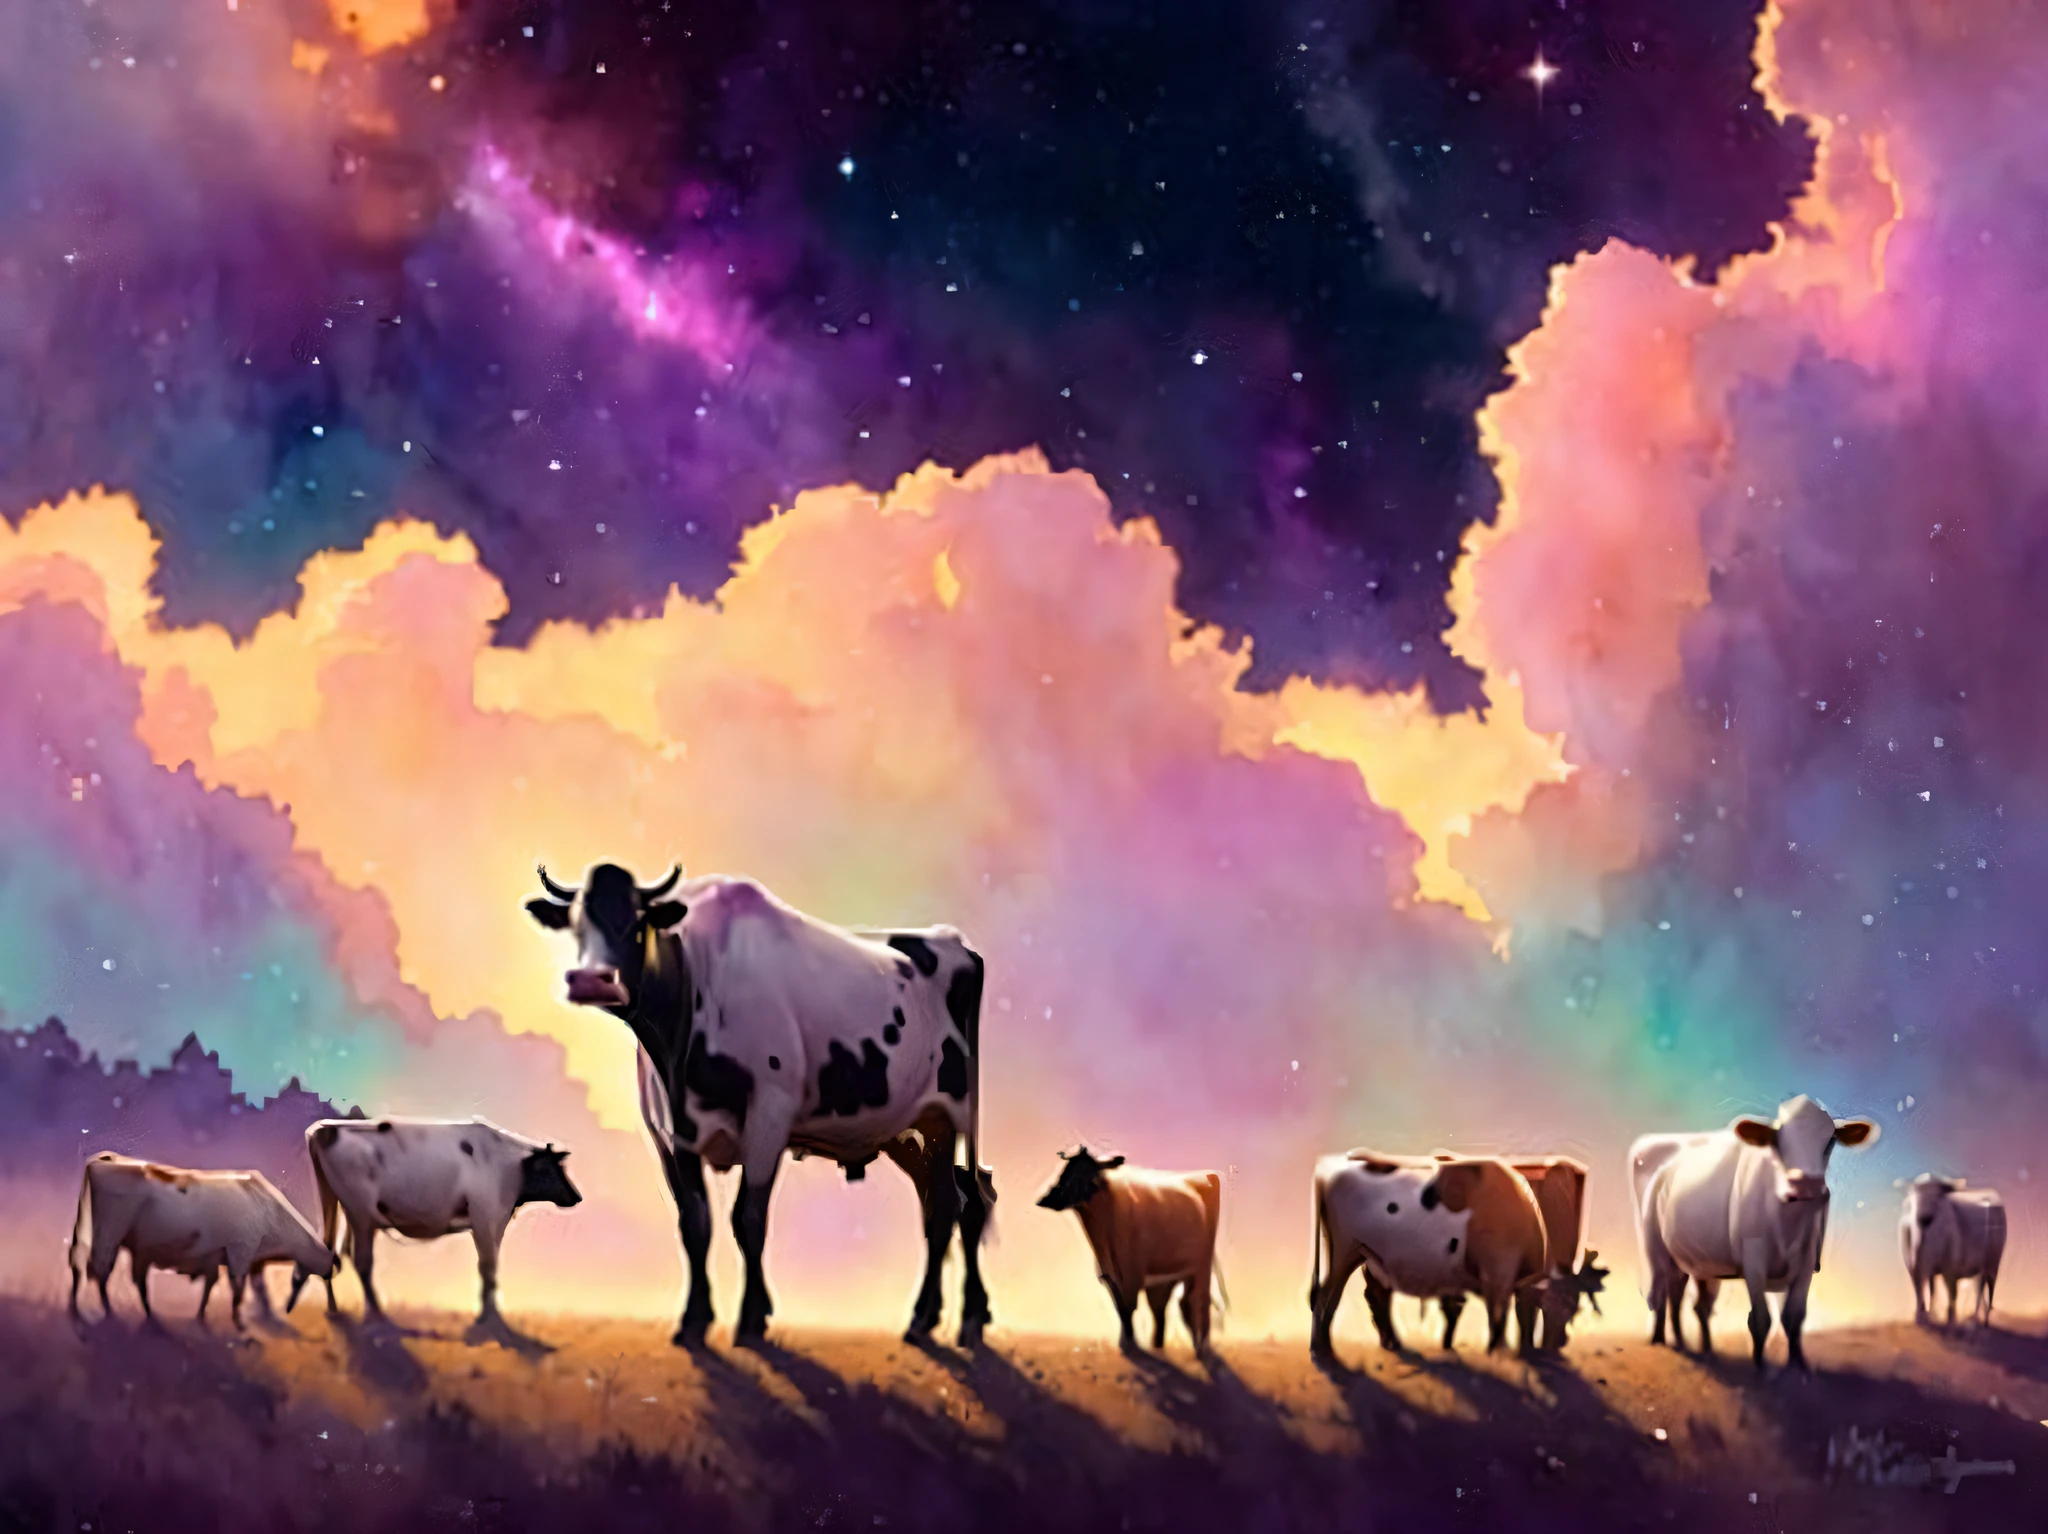 牛と彼らは星雲に囲まれています, 非常に詳細な, 金細工, ロマンチックな物語ファンタジー, 柔らかい映画照明, 賞, ディズニーコンセプトアート水彩イラストマンディユルゲンスとアルフォンスミュシャとアリーナアエナミ, パステルカラーパレット, artstationで紹介されました